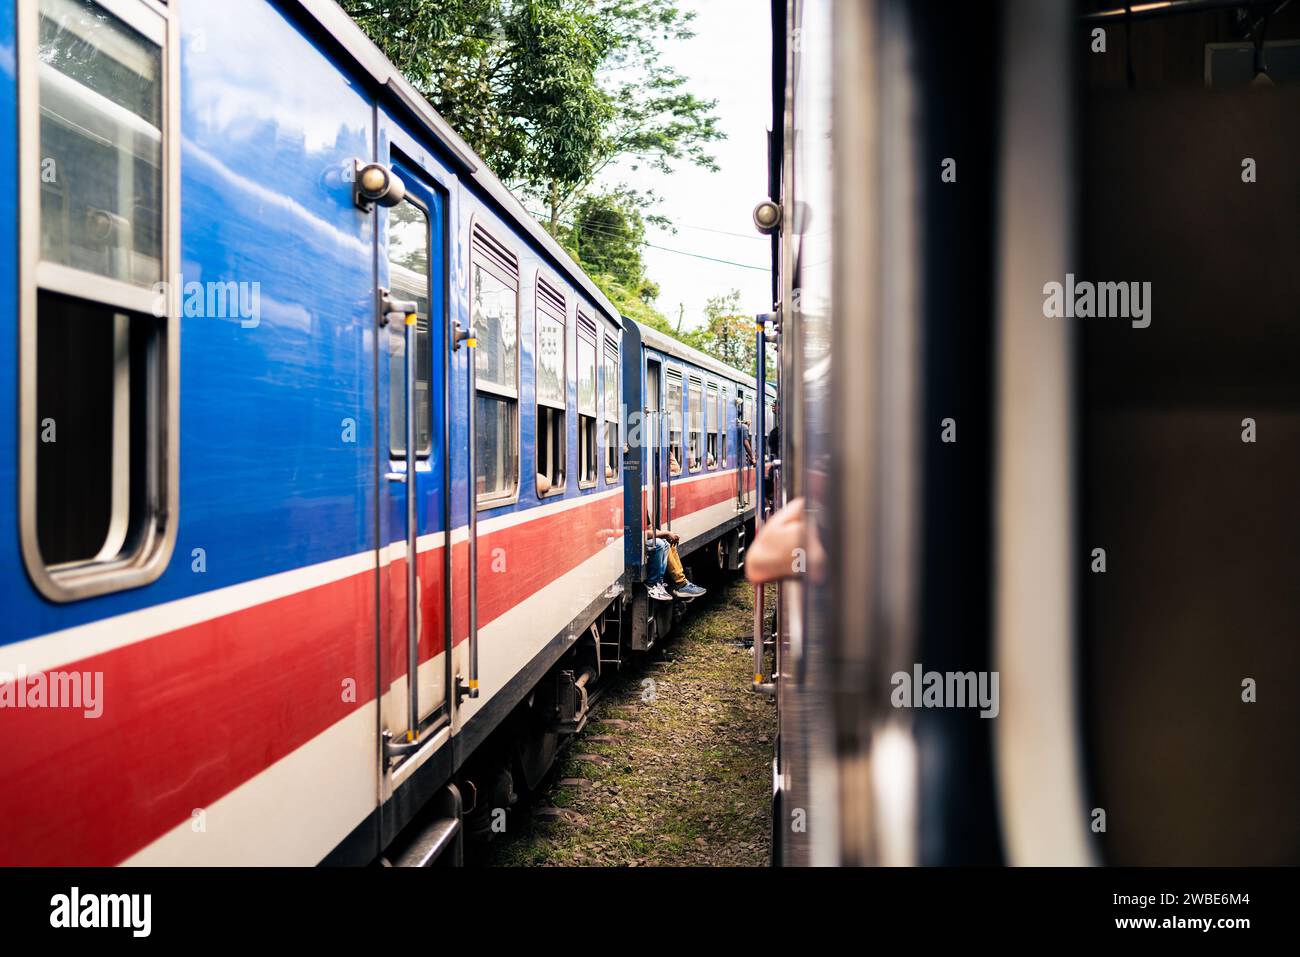 Deux trains au Sri Lanka attendent à la gare. Voyage ferroviaire et tourisme ferroviaire. Ancien autocar historique coloré bleu et rouge. Chemin de fer à Ceylan. Banque D'Images